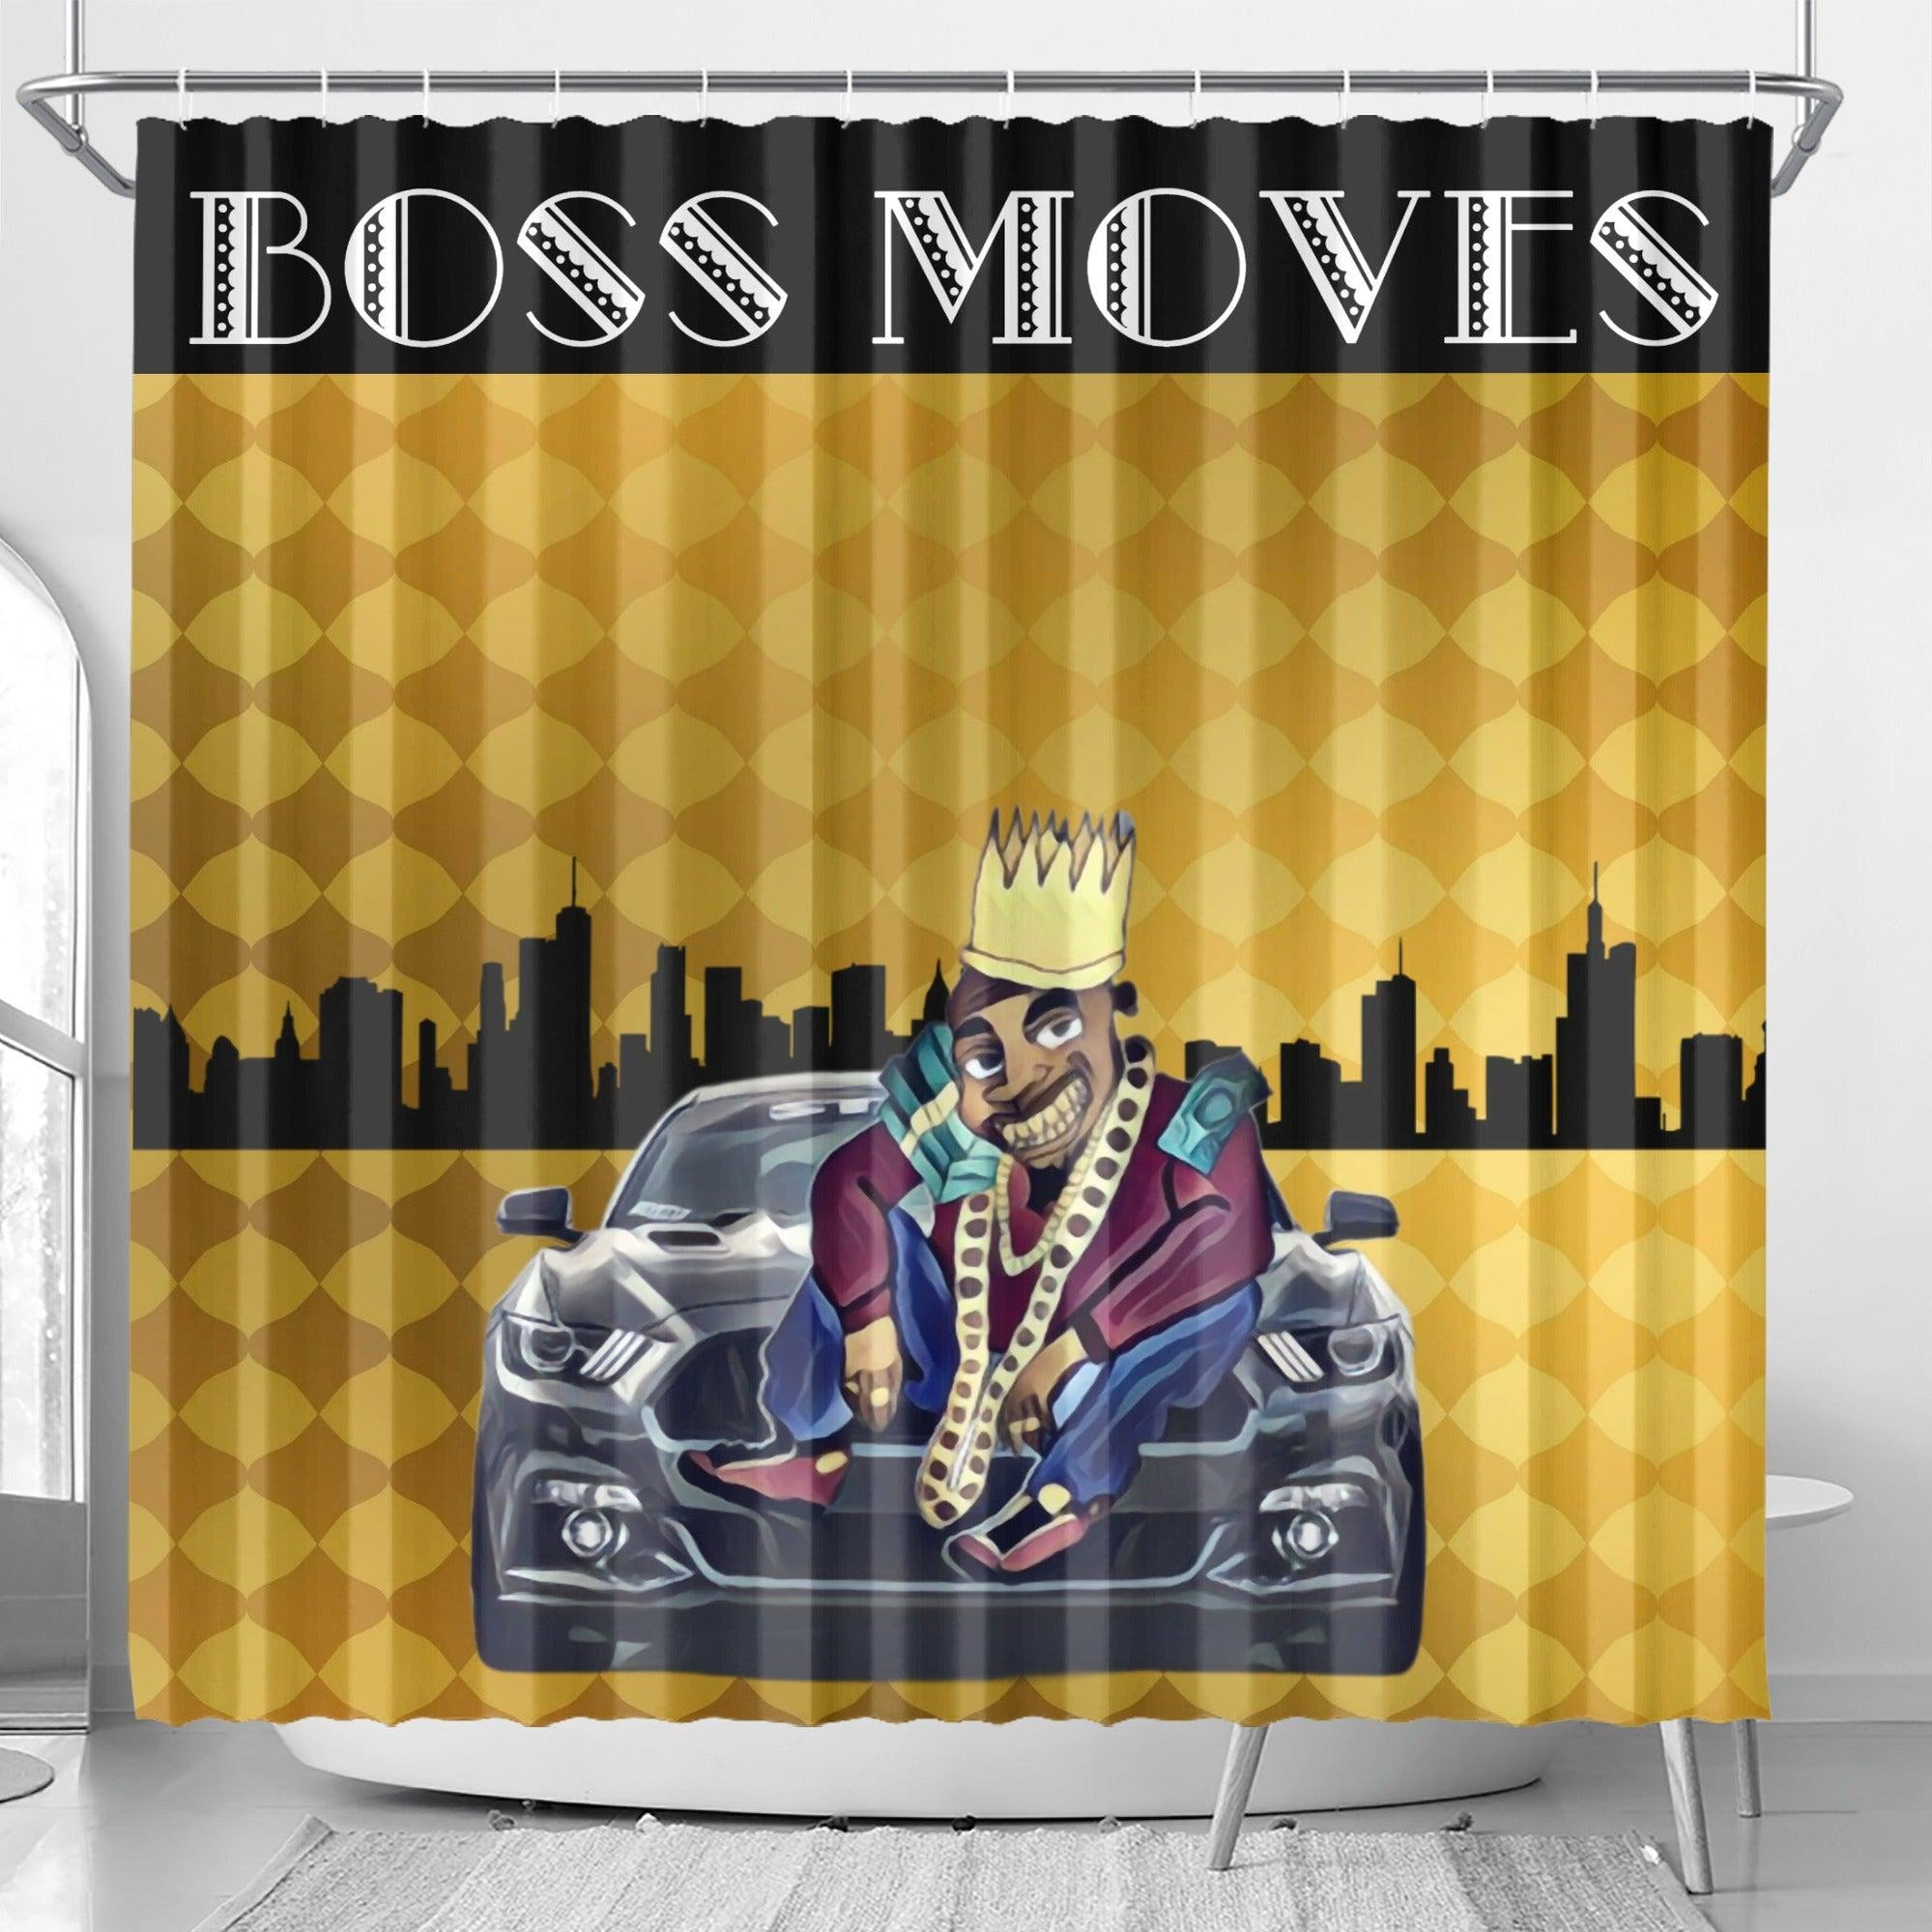 100.grams BossMoves Shower Curtain - Kanivee Customs